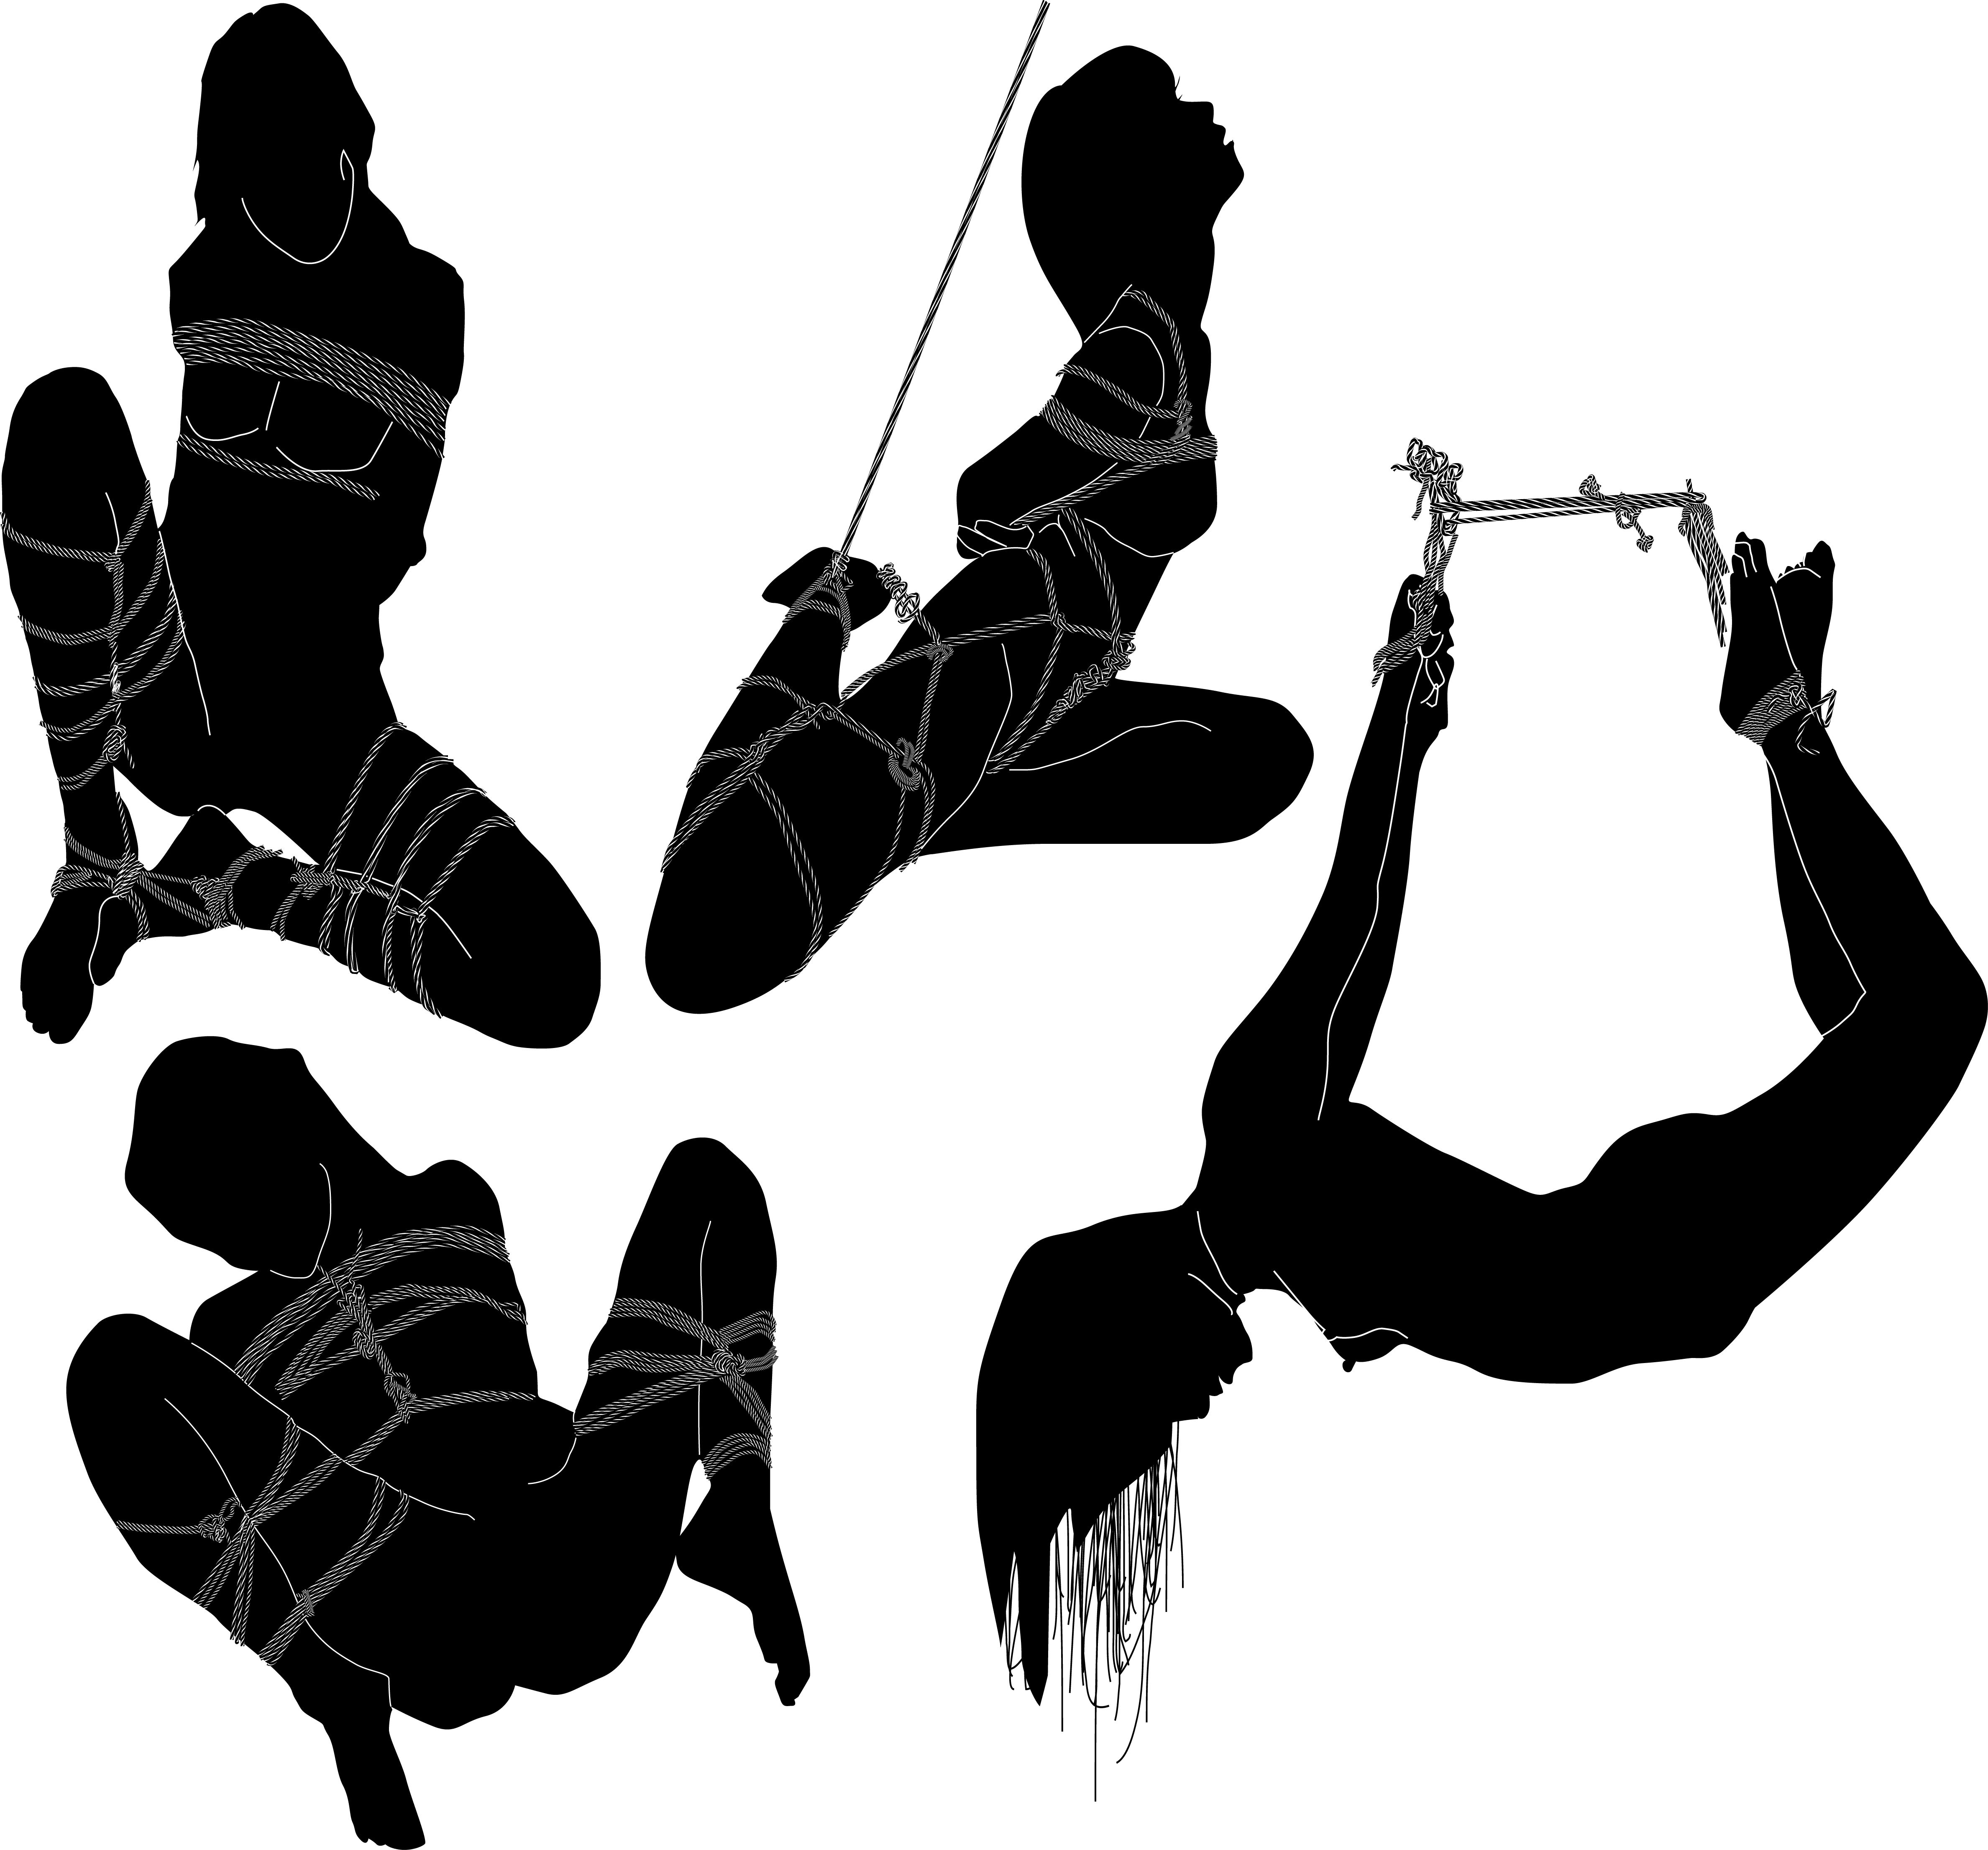 体を紐で縛られるSMプレイしている複数の女性のイラスト